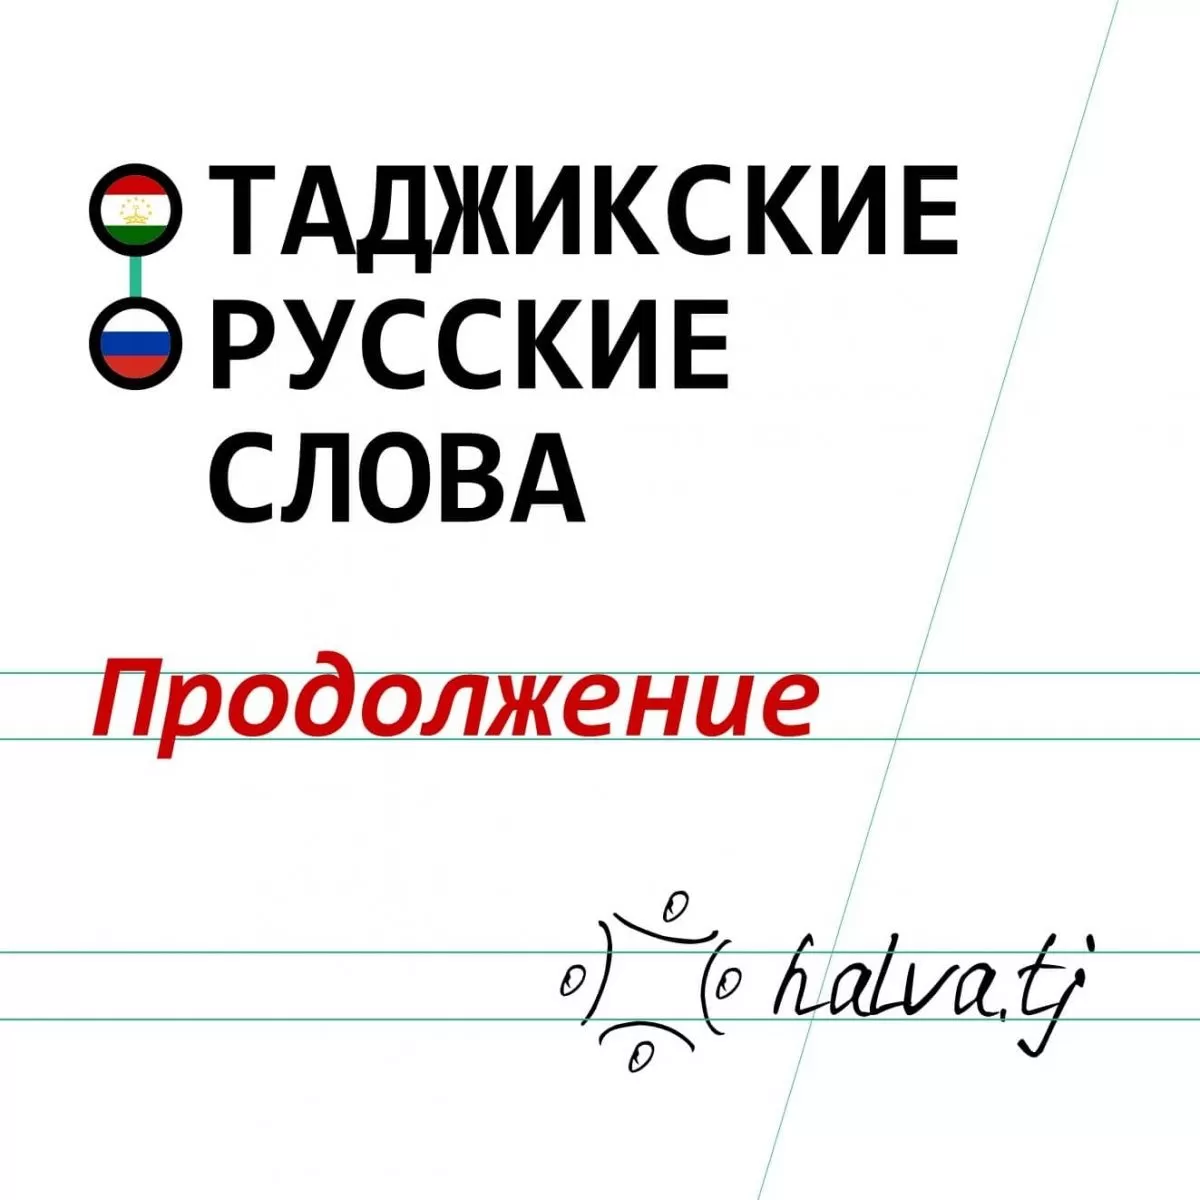 Какие русские слова имеют таджикское происхождение? Продолжение